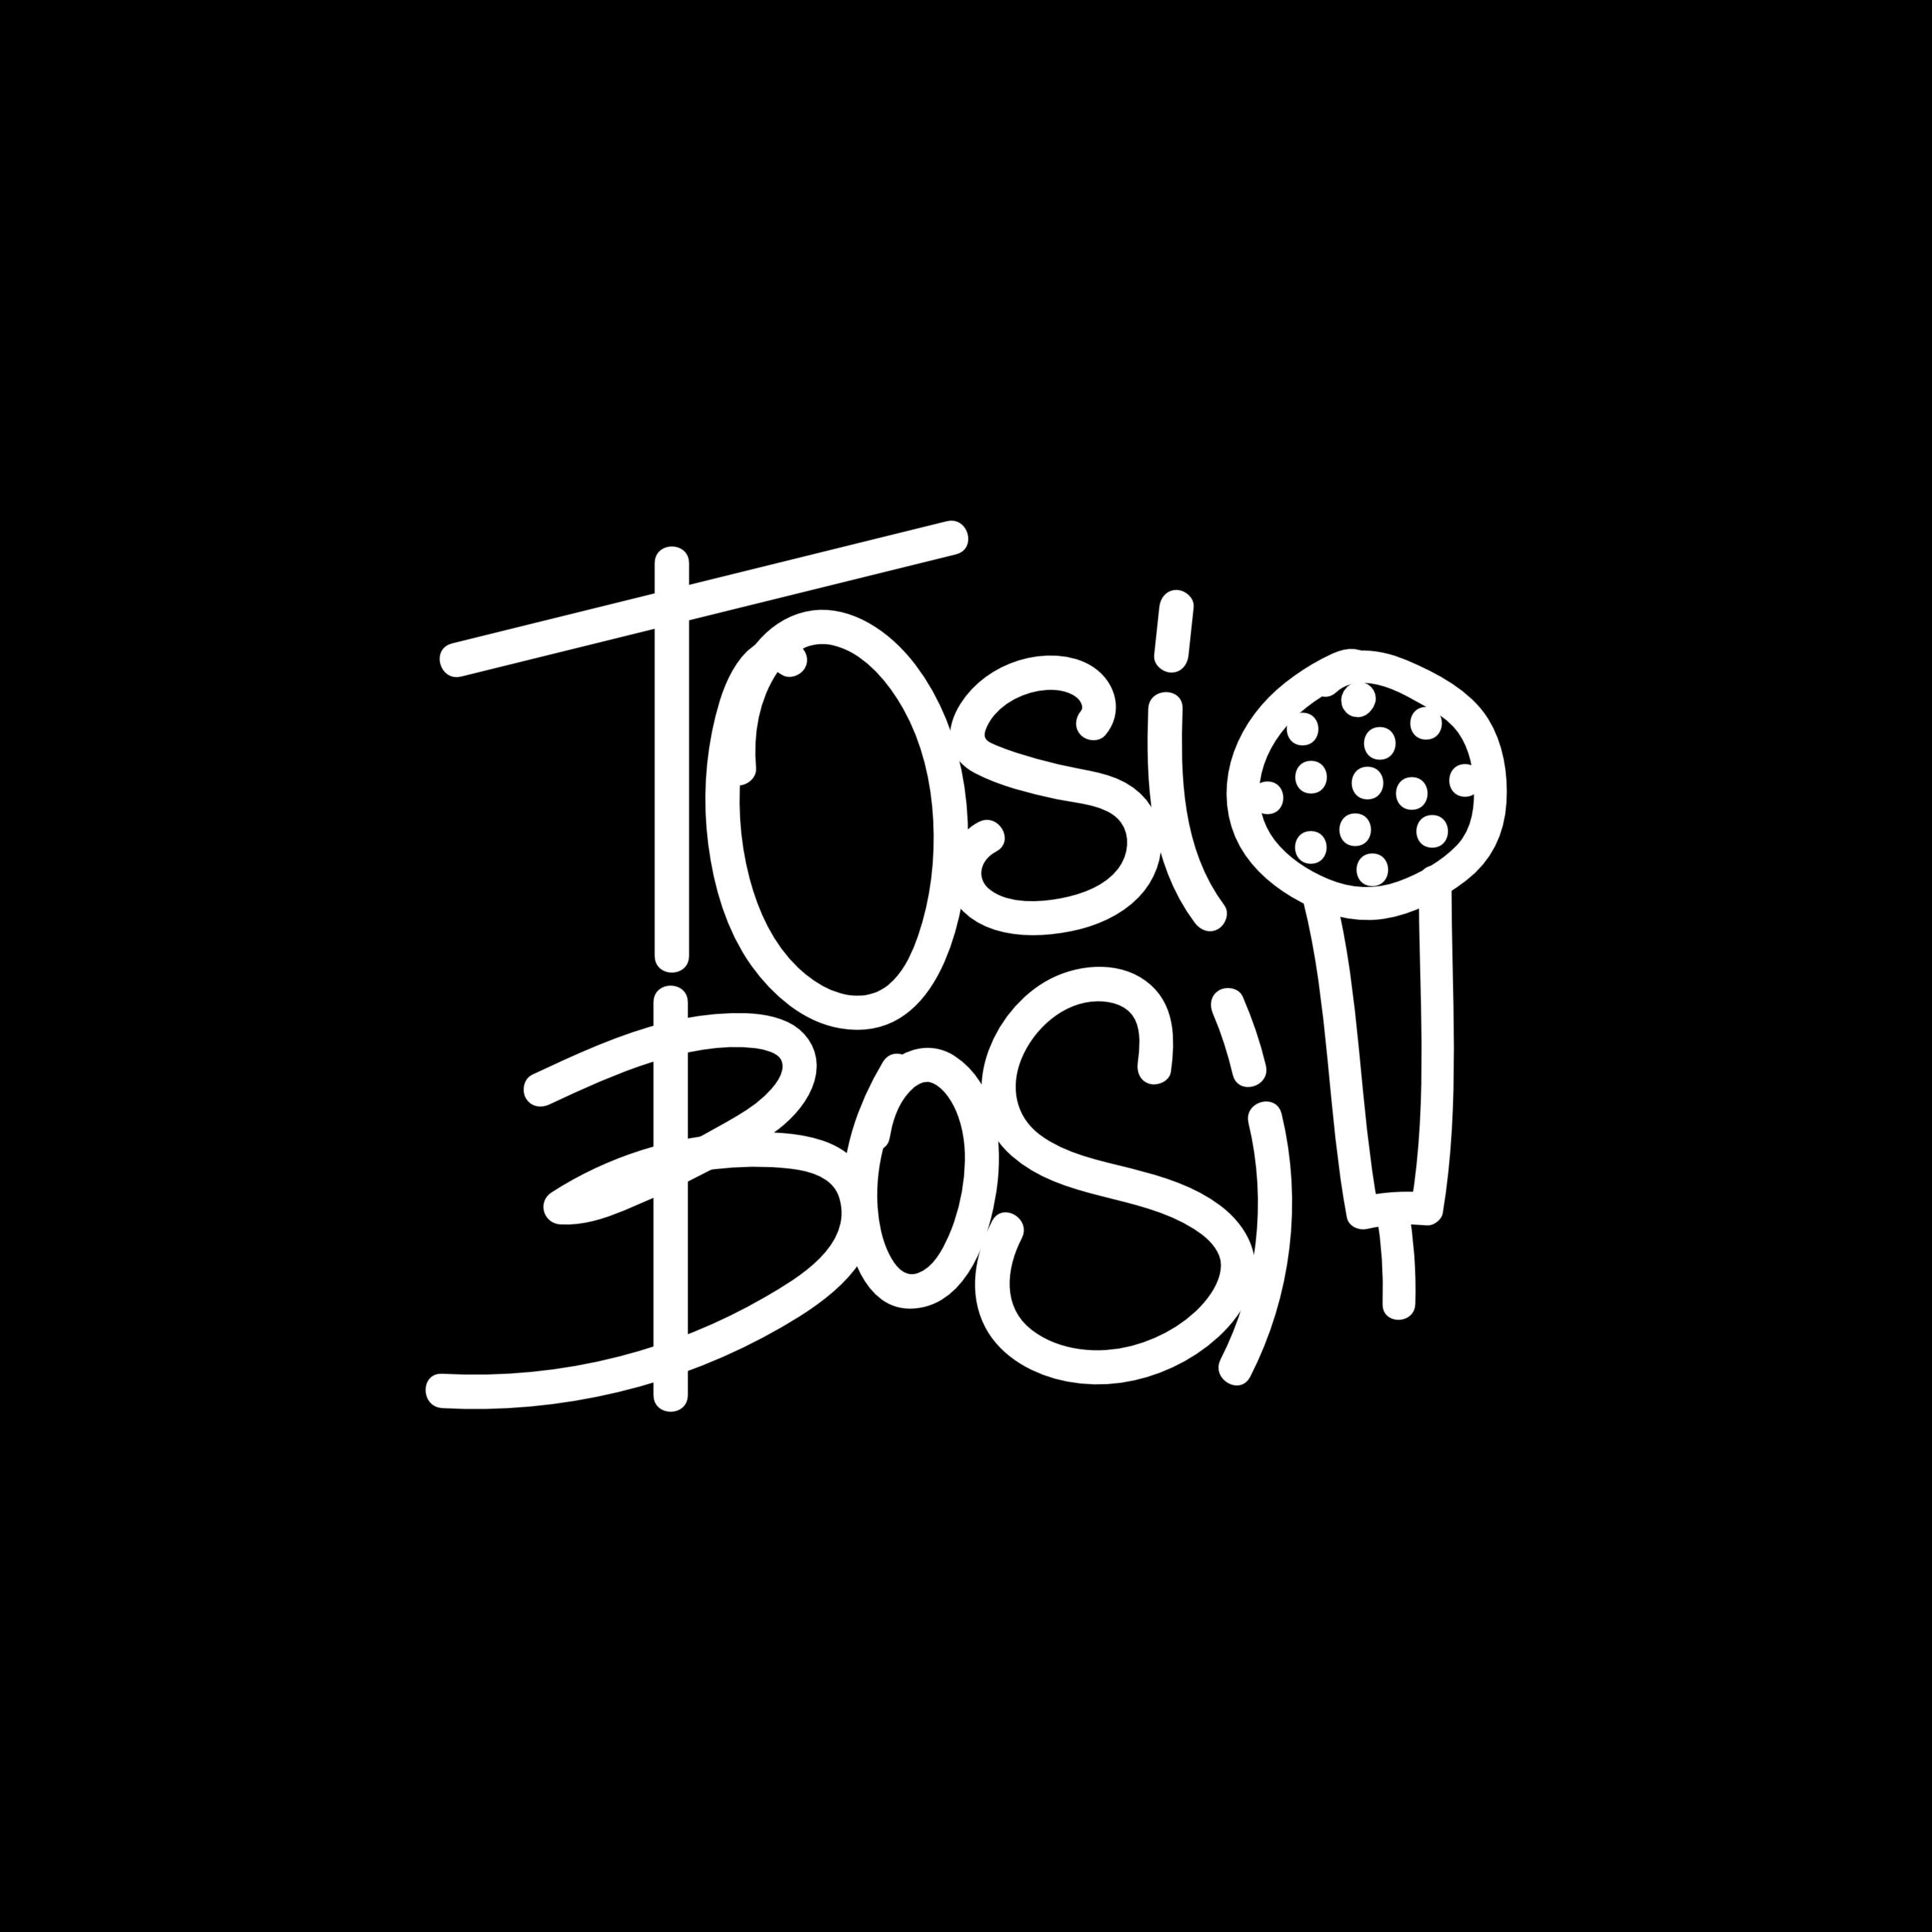 Иван Филиппов, «Тень» | TosiBosi podcast